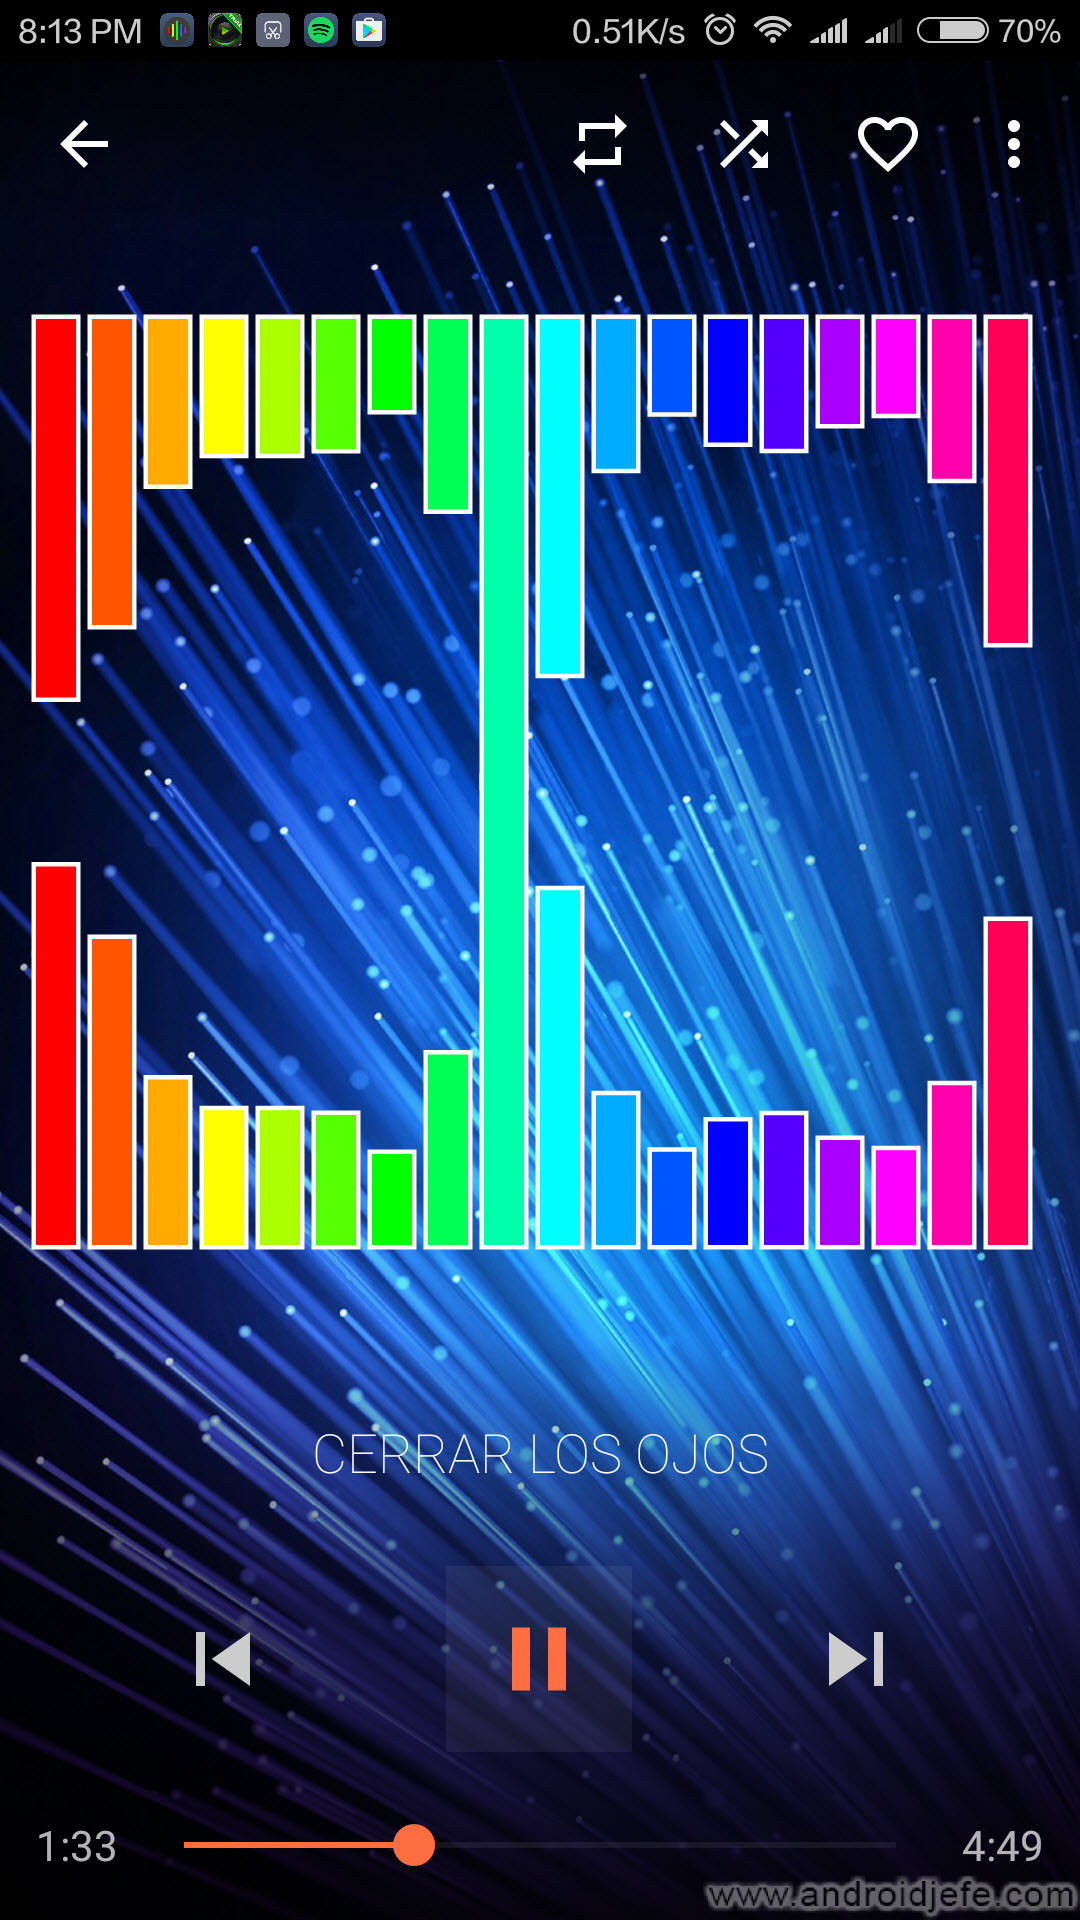 agencia Guau Oscurecer 5 reproductores efectos visuales al ritmo de la musica: espectro, barras